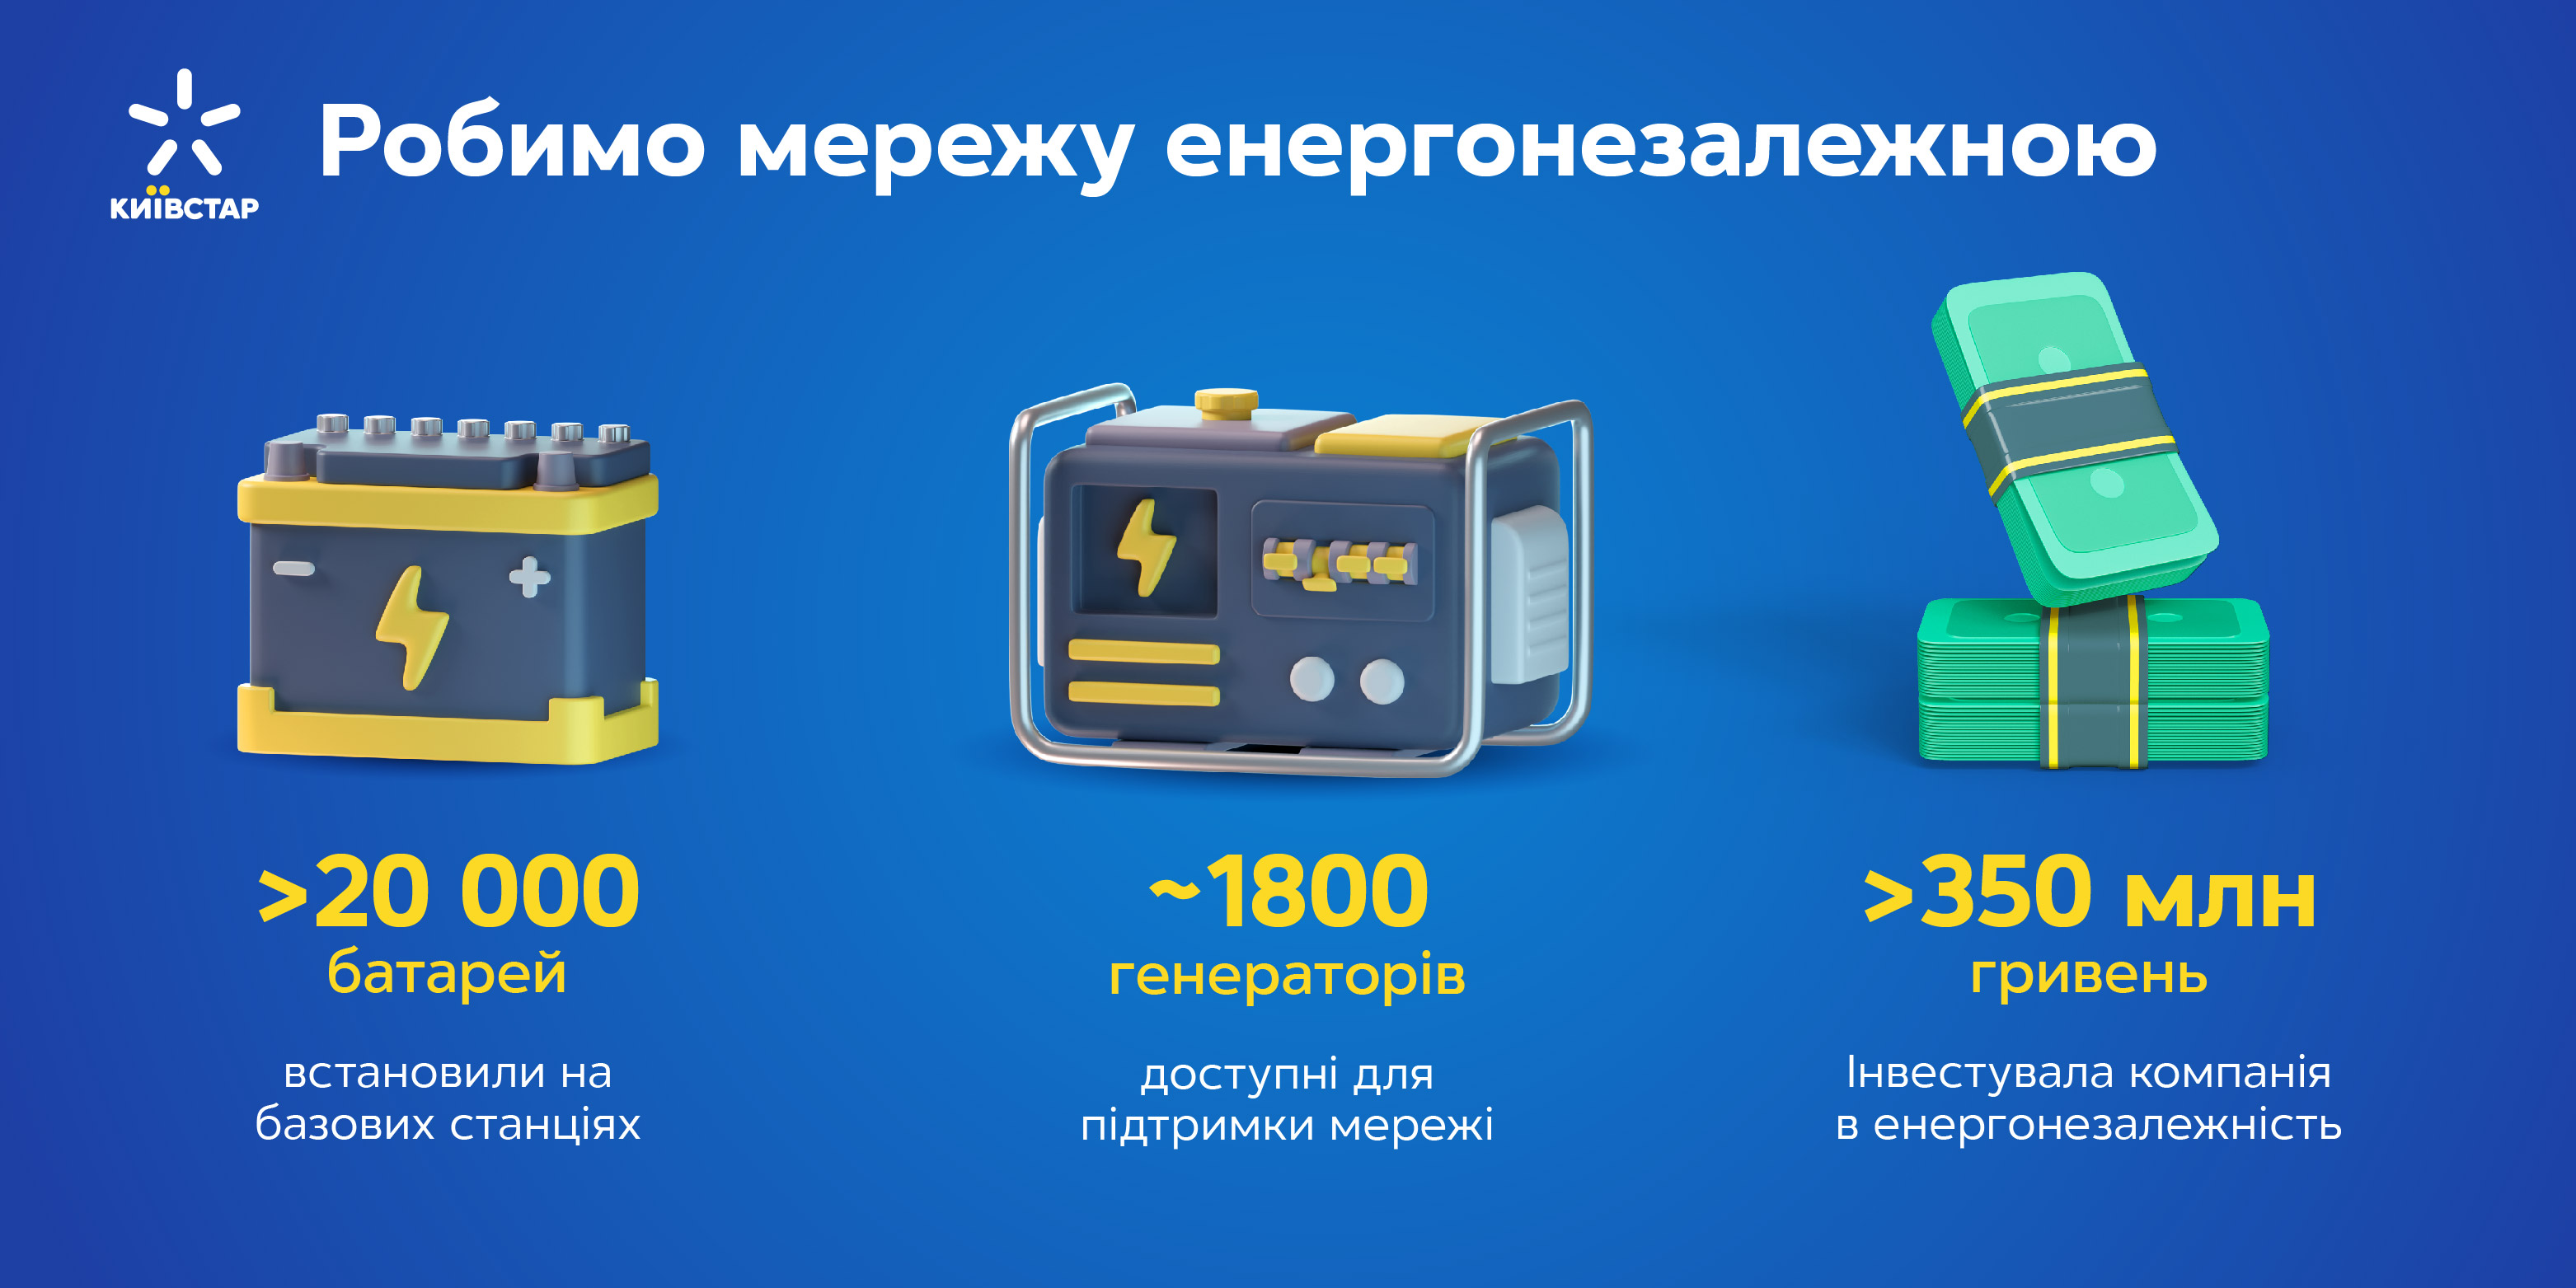 На базові станції Київстар встановлено понад 20 тисяч нових акумуляторів